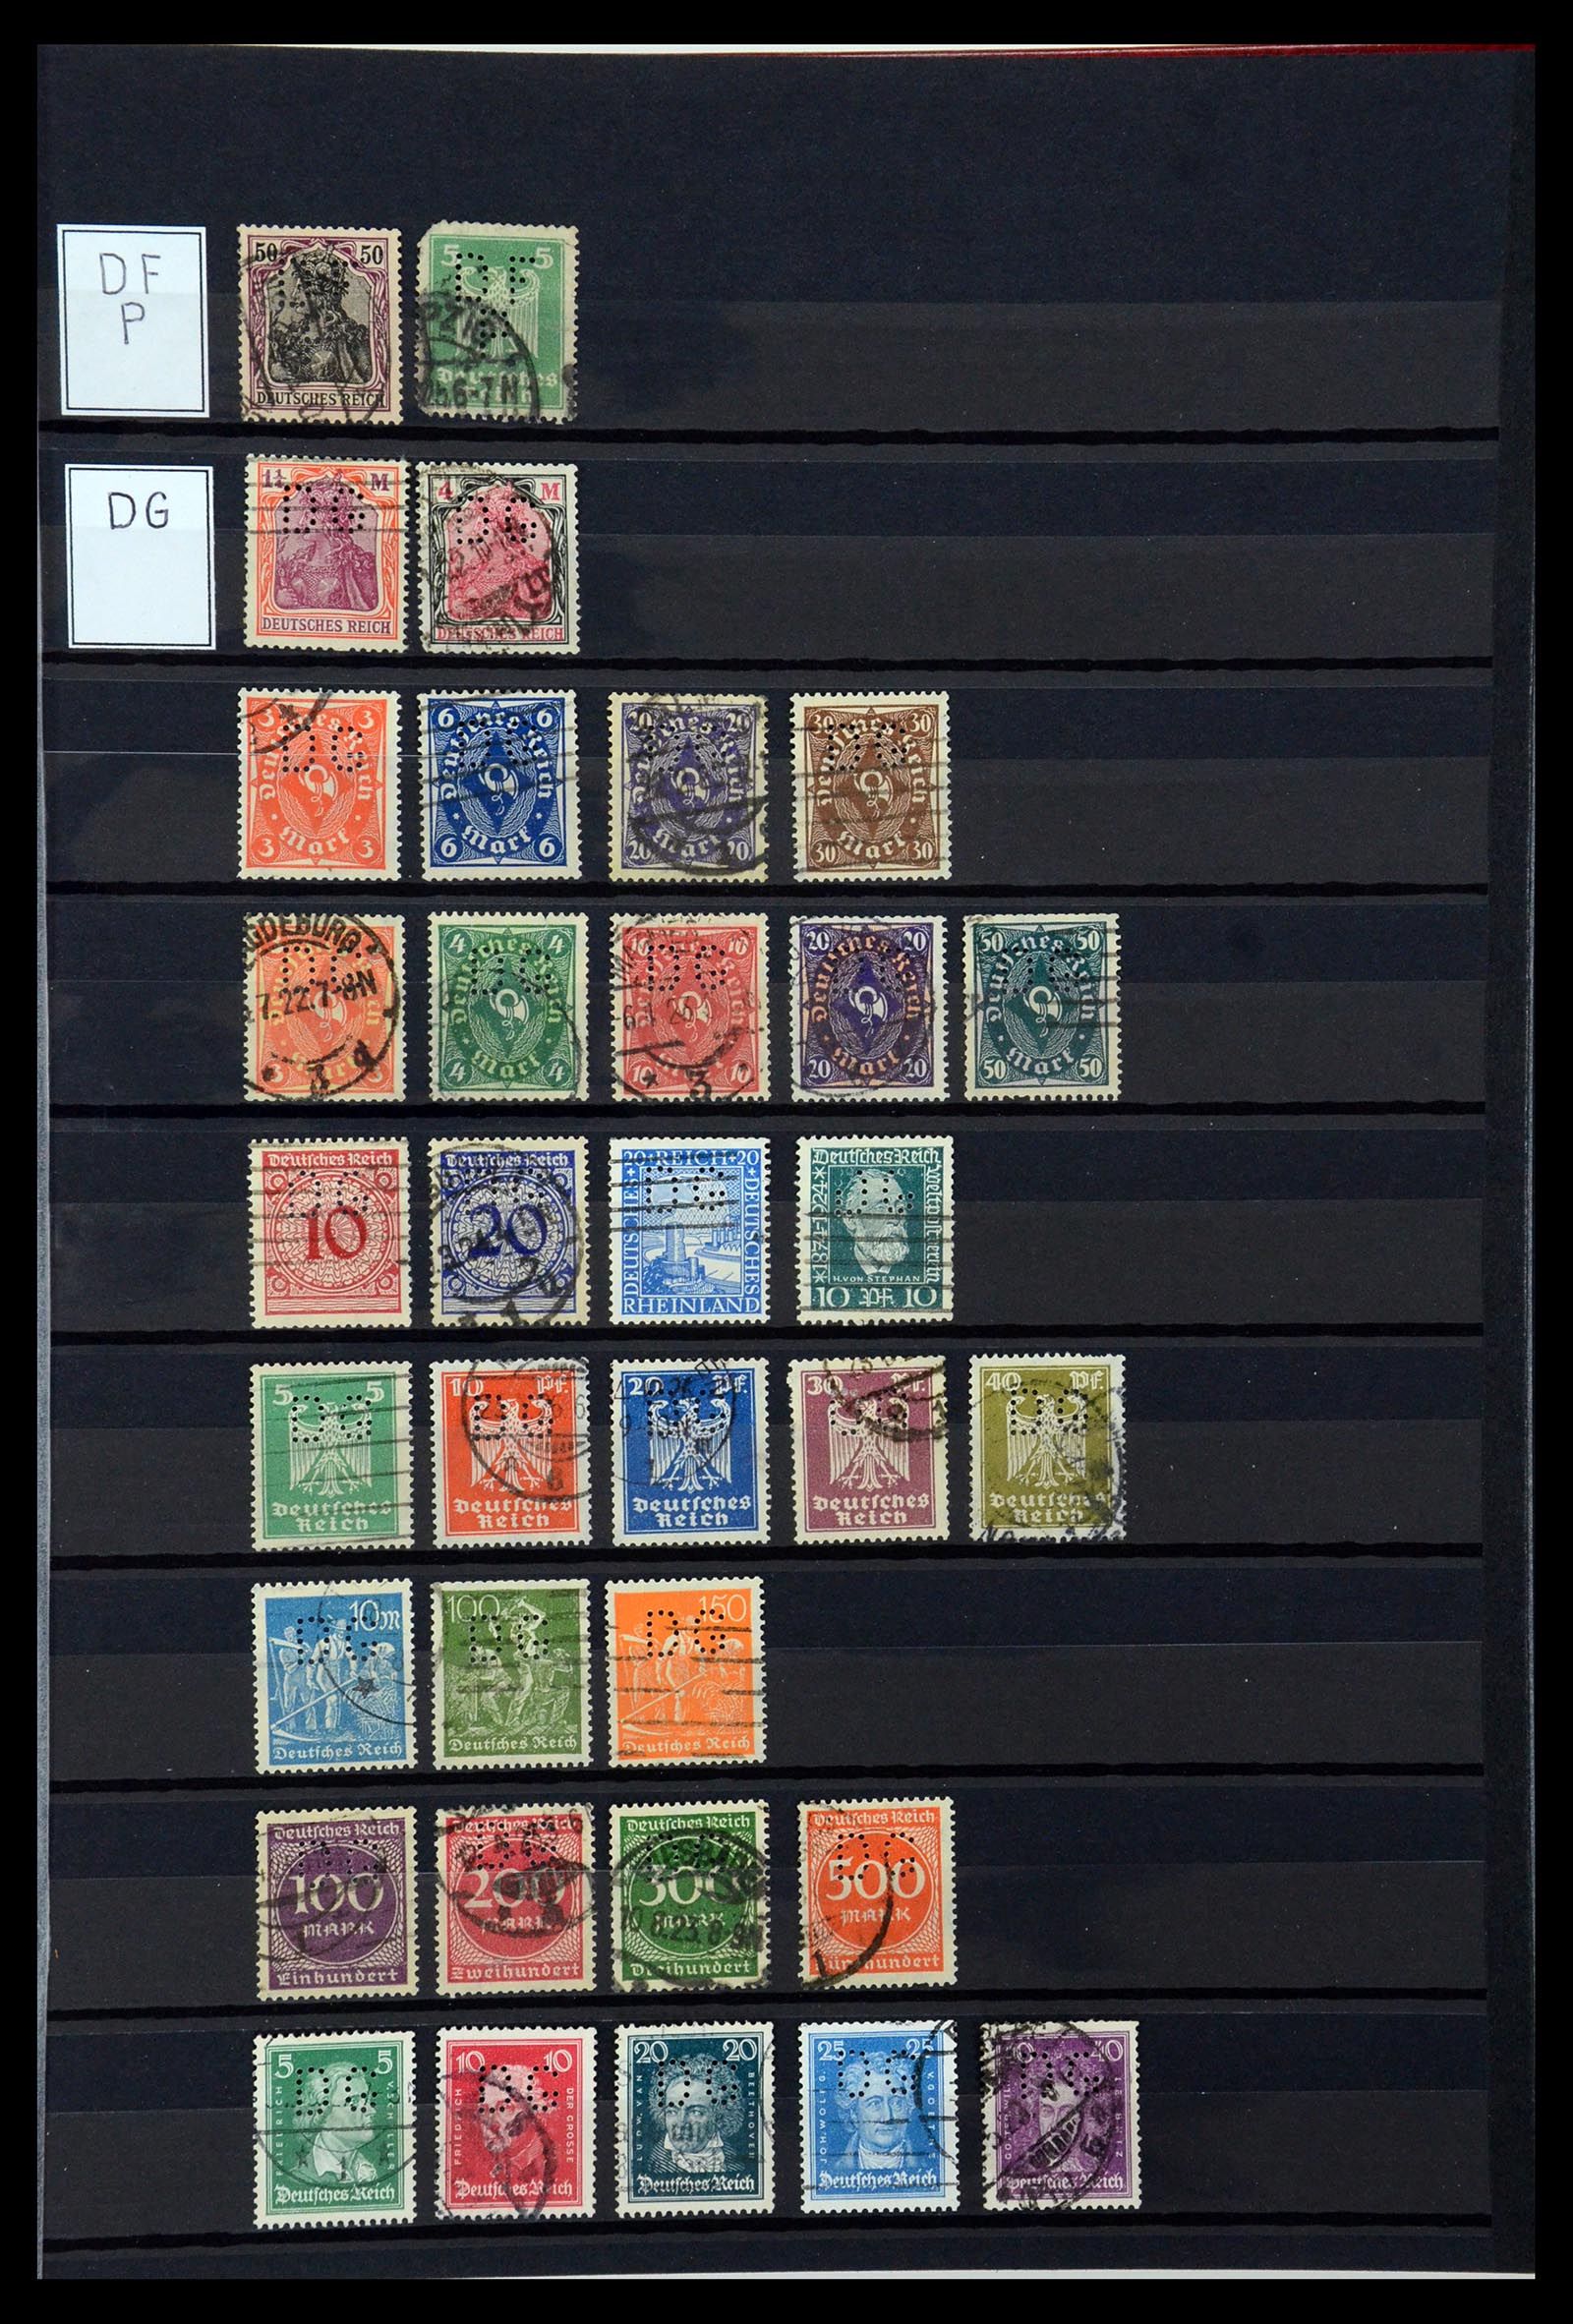 36405 095 - Stamp collection 36405 German Reich perfins 1880-1945.